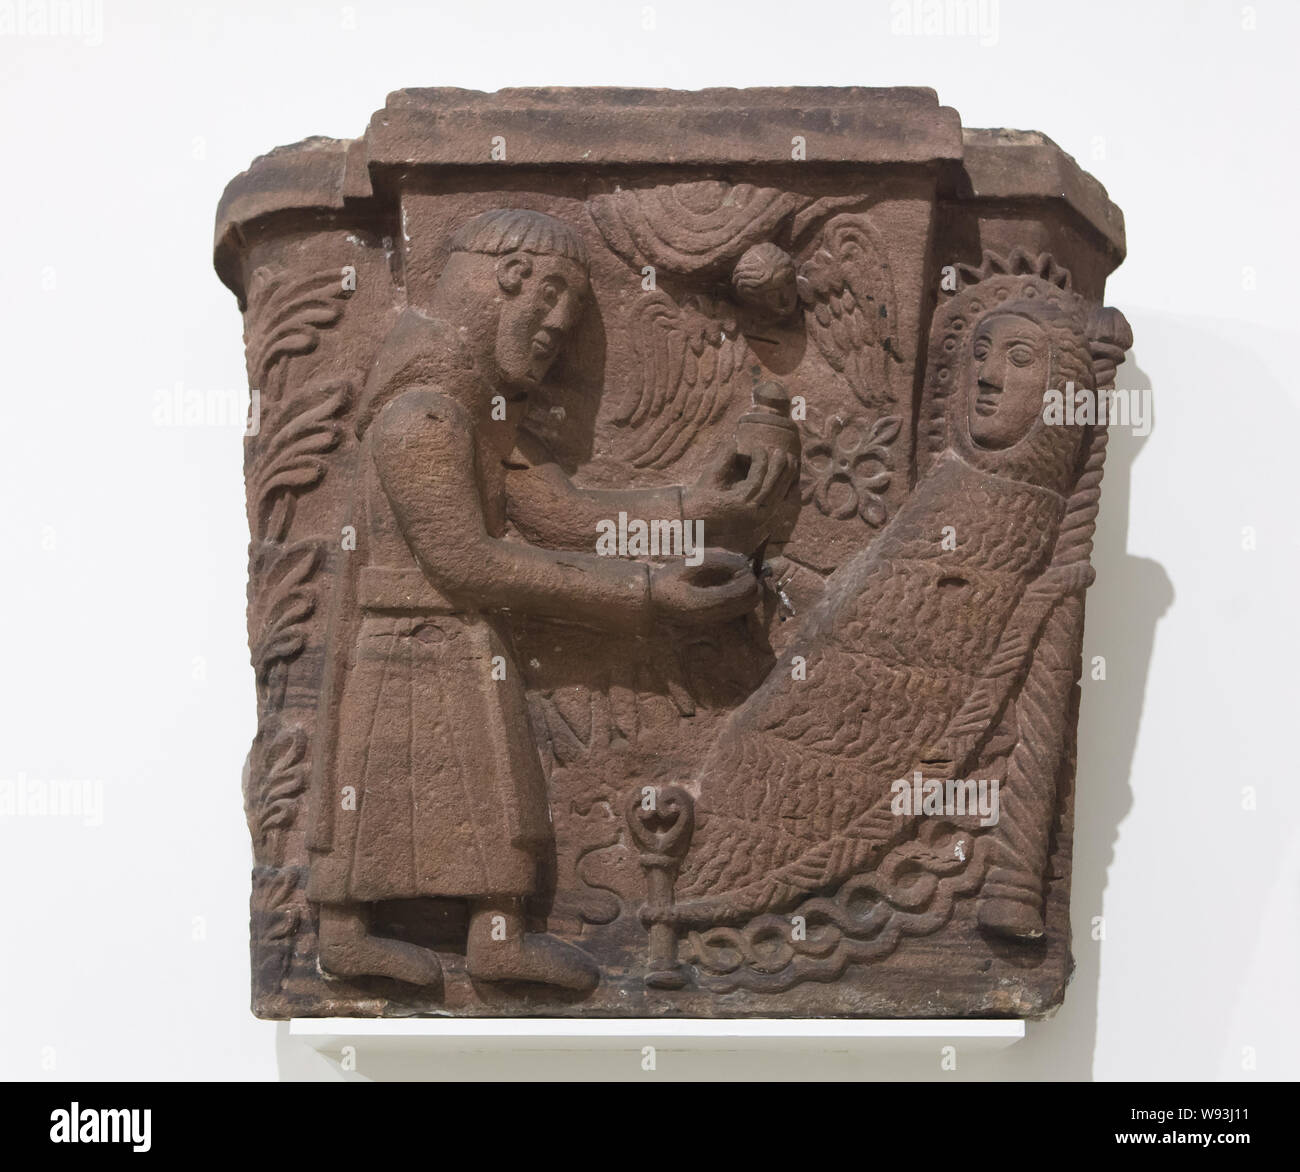 Última comunión de Santa María de Egipto. Capitel románico data de alrededor de 1150 desde la Alspach Abbey (Abbaye d'Alspach), ahora en exhibición en el Museo Unterlinden (Museo Unterlinden en Colmar, Alsacia, Francia. Foto de stock